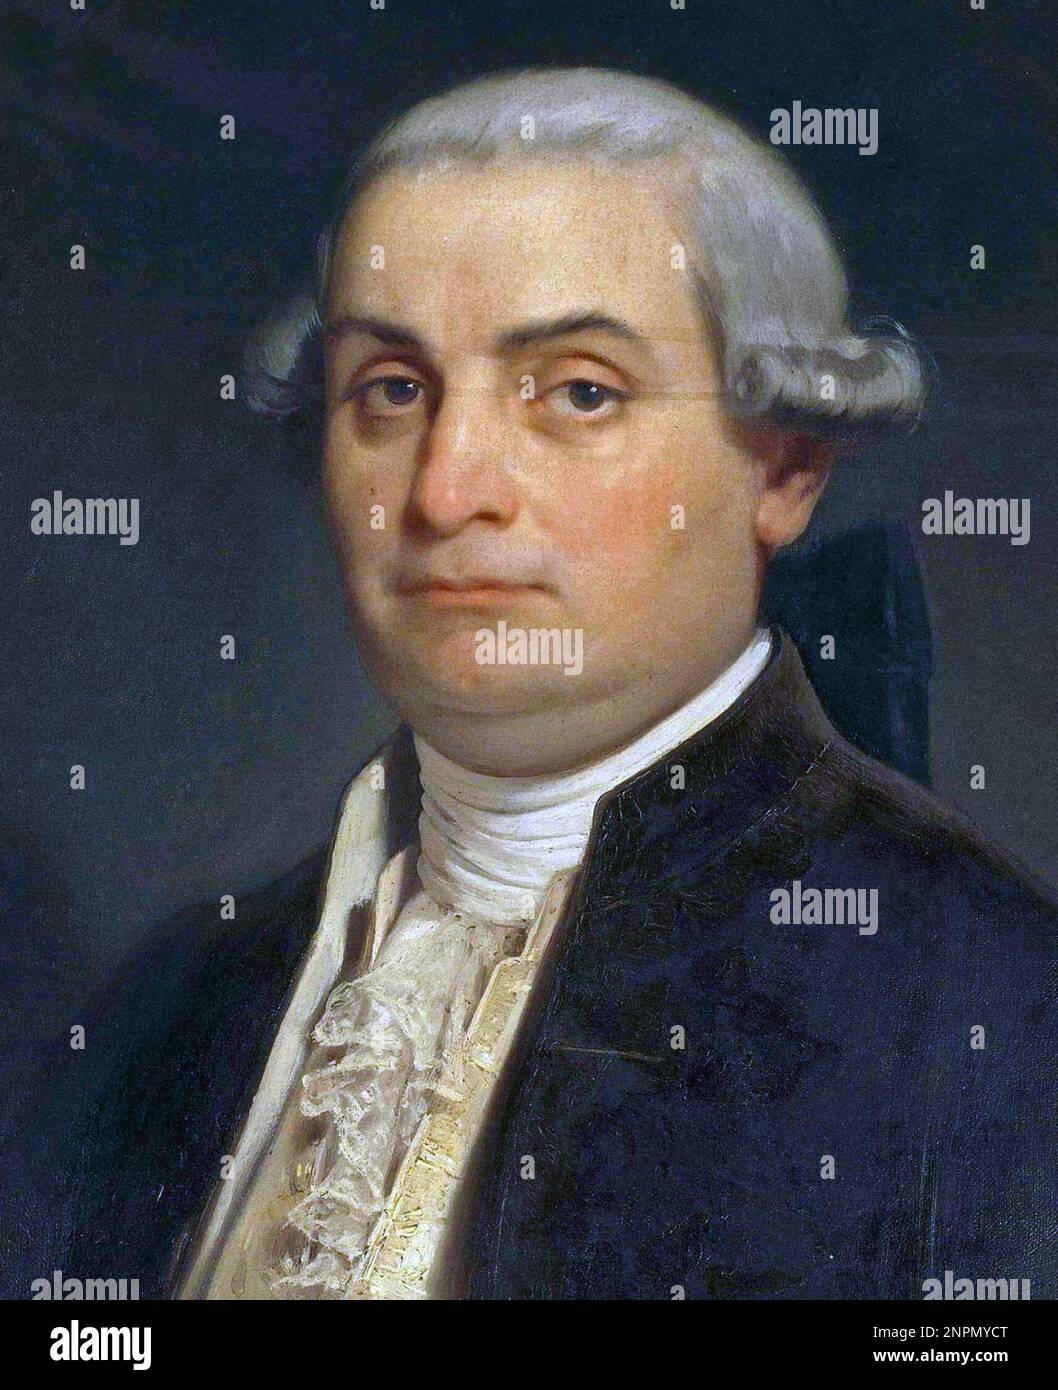 Cesare Beccaria, Cesare Bonesana di Beccaria, Marquis of Gualdrasco and Villareggio (1738 – 1794) Italian criminologist and philosopher Stock Photo